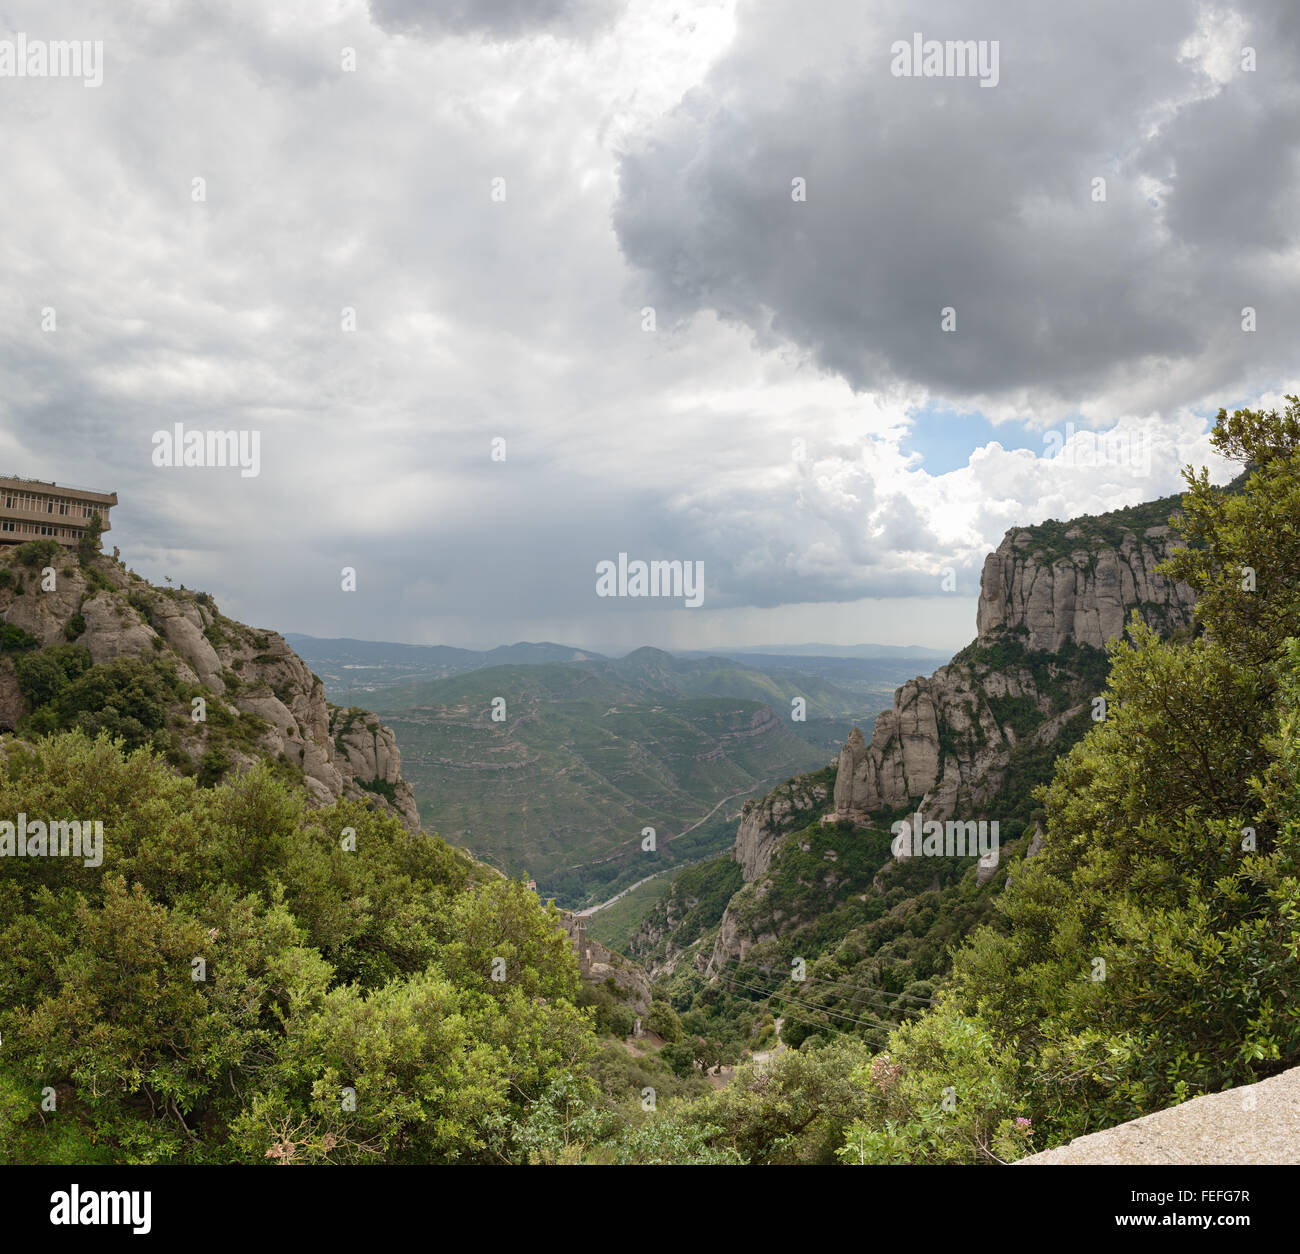 Angolo alto vista panoramica del Llobregat fiume valle dalla stazione superiore della funivia Aeri de Montserrat a Montserrat monast Foto Stock